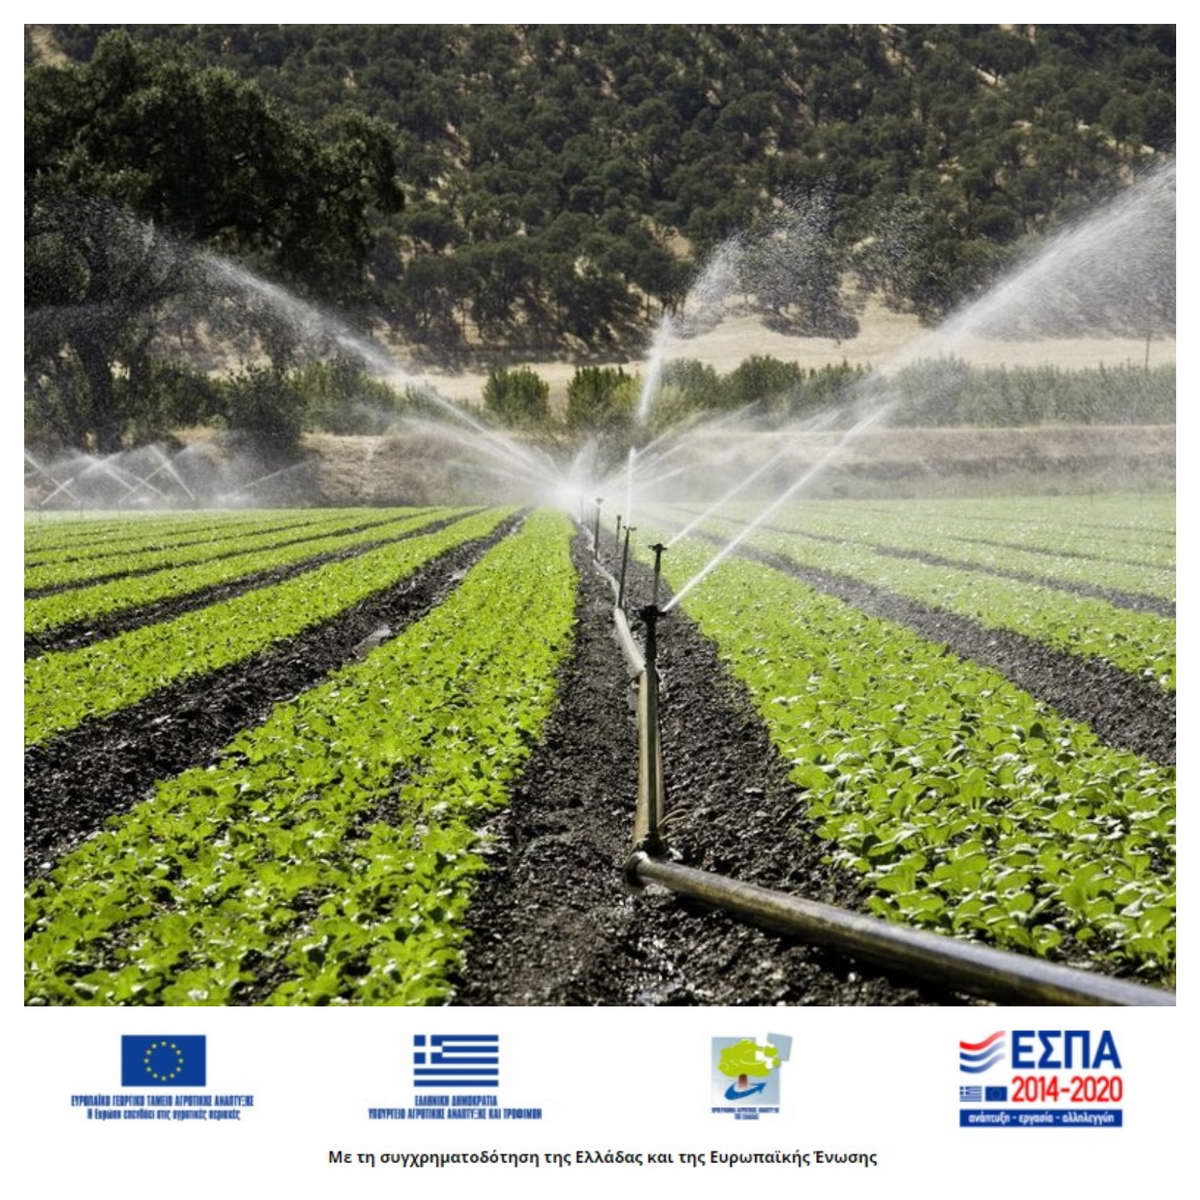 2021.06.03 @ Π.Ε. Λευκάδας: Μέχρι τις 15 Ιουλίου η Υποβολή Προτάσεων ενίσχυσης για επενδύσεις εξοικονόμησης νερού μέσω του ΠΑΑ 2014-2020. #ΠΙΝ #Λευκάδα #ΑγροτικήΑνάπτυξη #AgrotikiAnaptixi #ΠΑΑ #PAA #ΕΣΠΑ #ESPA #ThisIsESPA #antipin_lefkada #ΠεριφέρειακήΕνότηταΛευκάδας #ΠεριφέρειαΙονίωνΝήσων